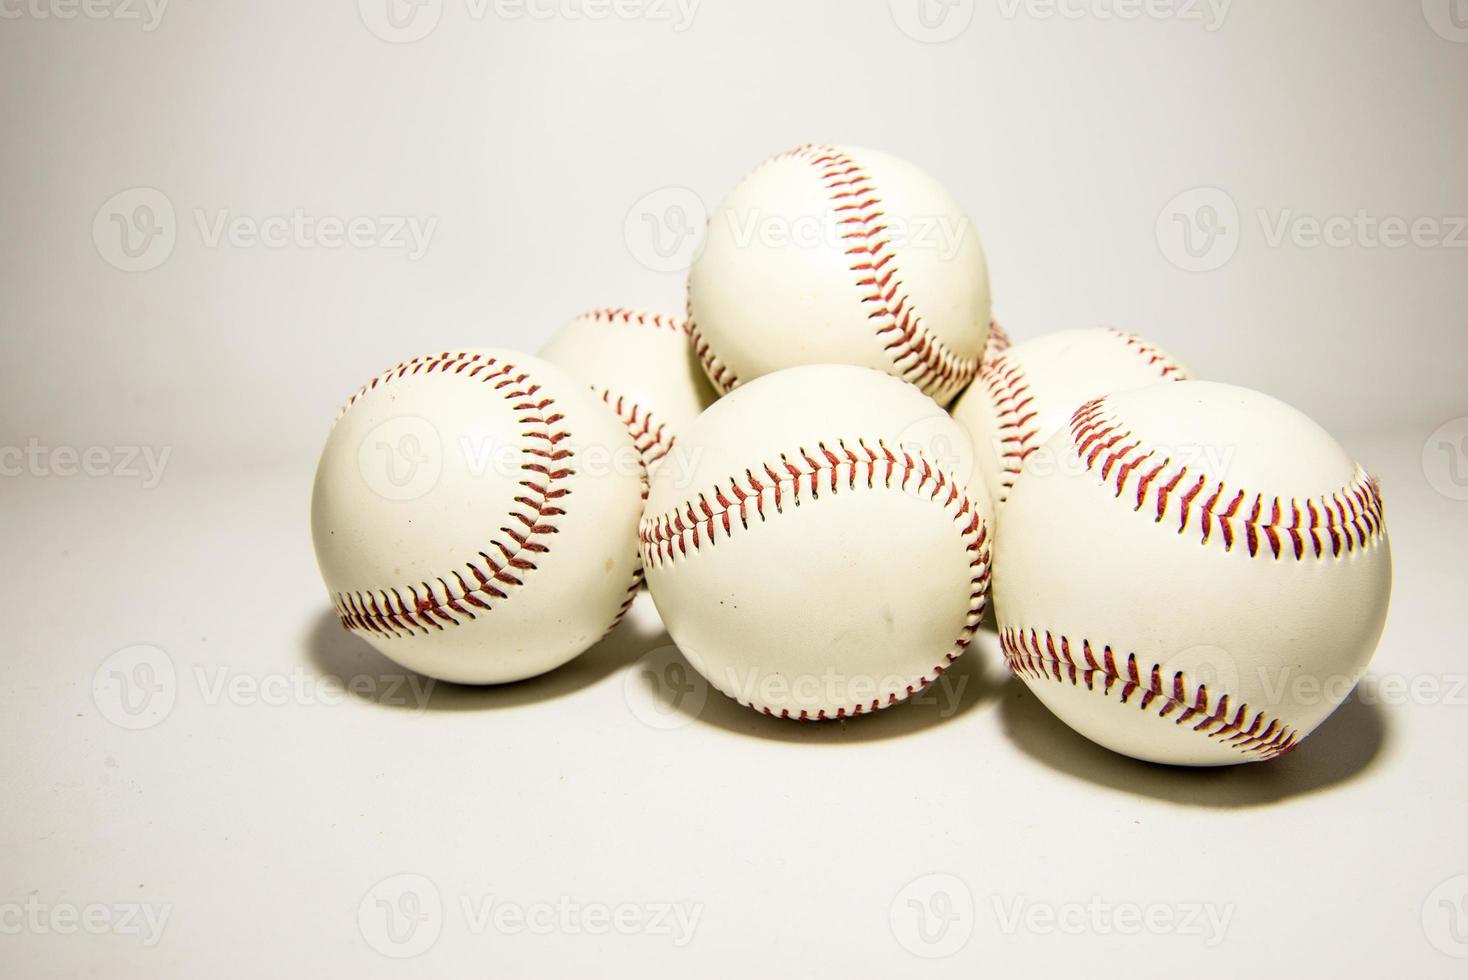 a a  Baseball photo